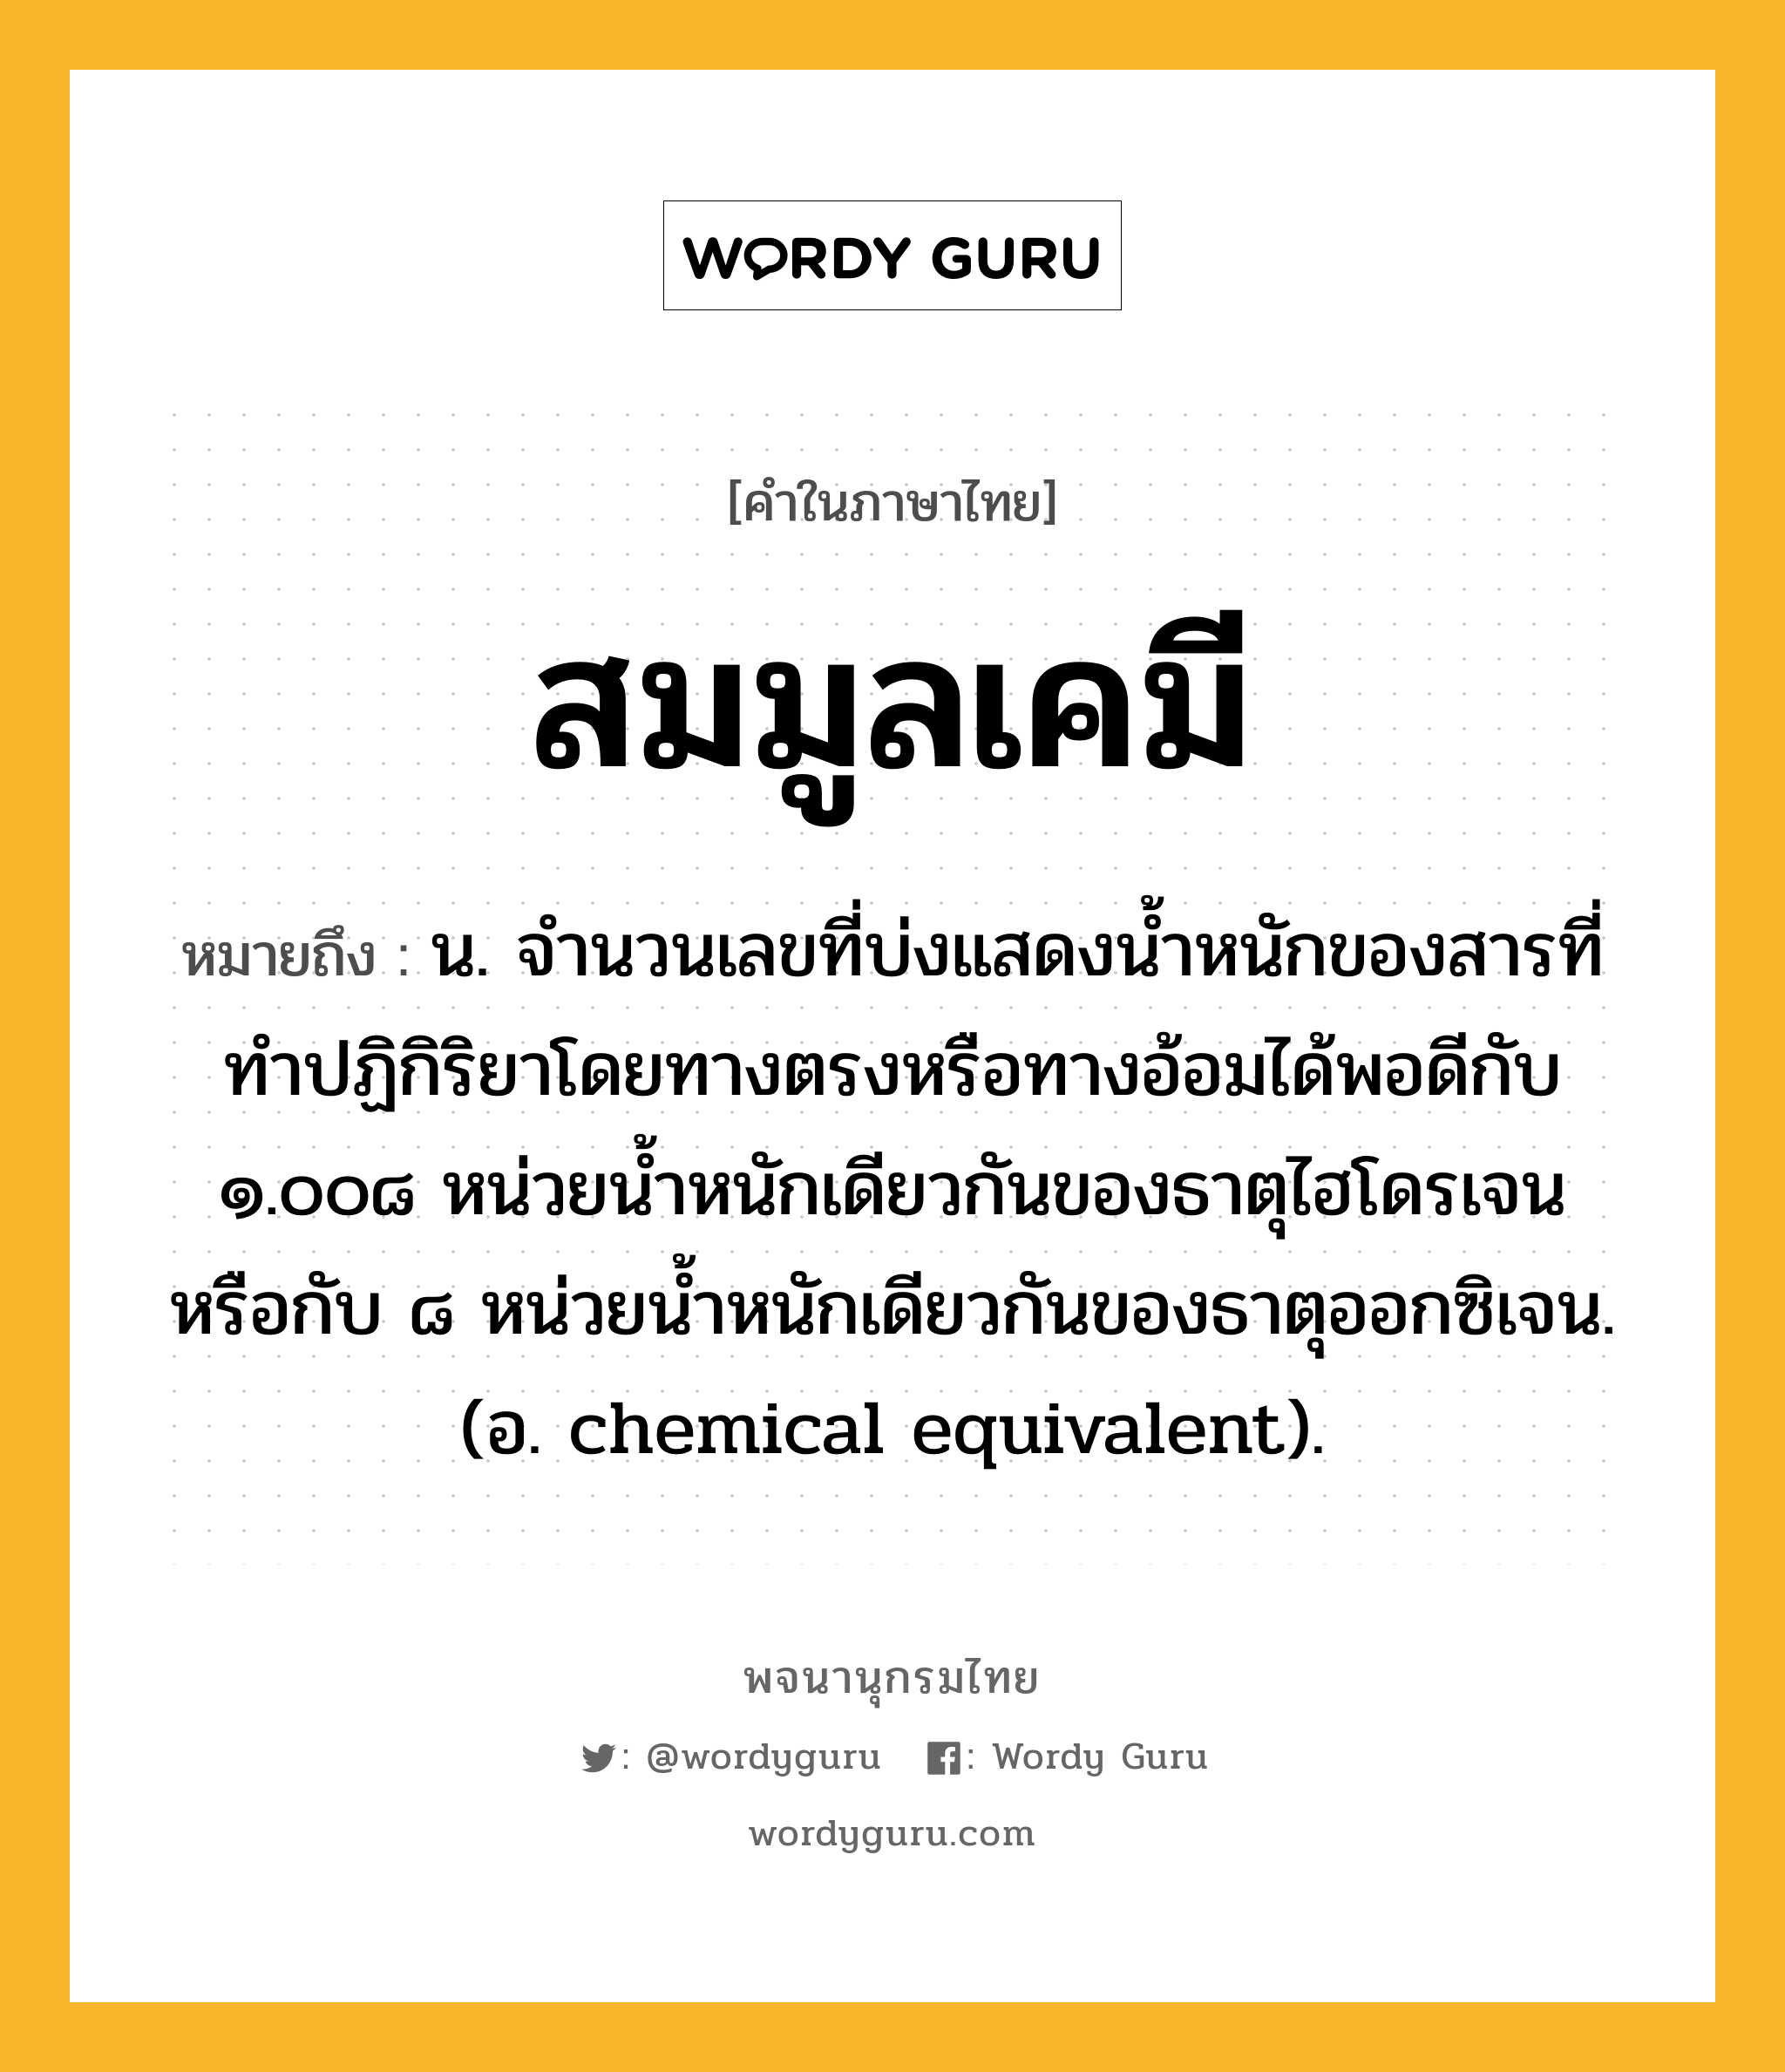 สมมูลเคมี หมายถึงอะไร?, คำในภาษาไทย สมมูลเคมี หมายถึง น. จํานวนเลขที่บ่งแสดงนํ้าหนักของสารที่ทําปฏิกิริยาโดยทางตรงหรือทางอ้อมได้พอดีกับ ๑.๐๐๘ หน่วยนํ้าหนักเดียวกันของธาตุไฮโดรเจน หรือกับ ๘ หน่วยนํ้าหนักเดียวกันของธาตุออกซิเจน. (อ. chemical equivalent).